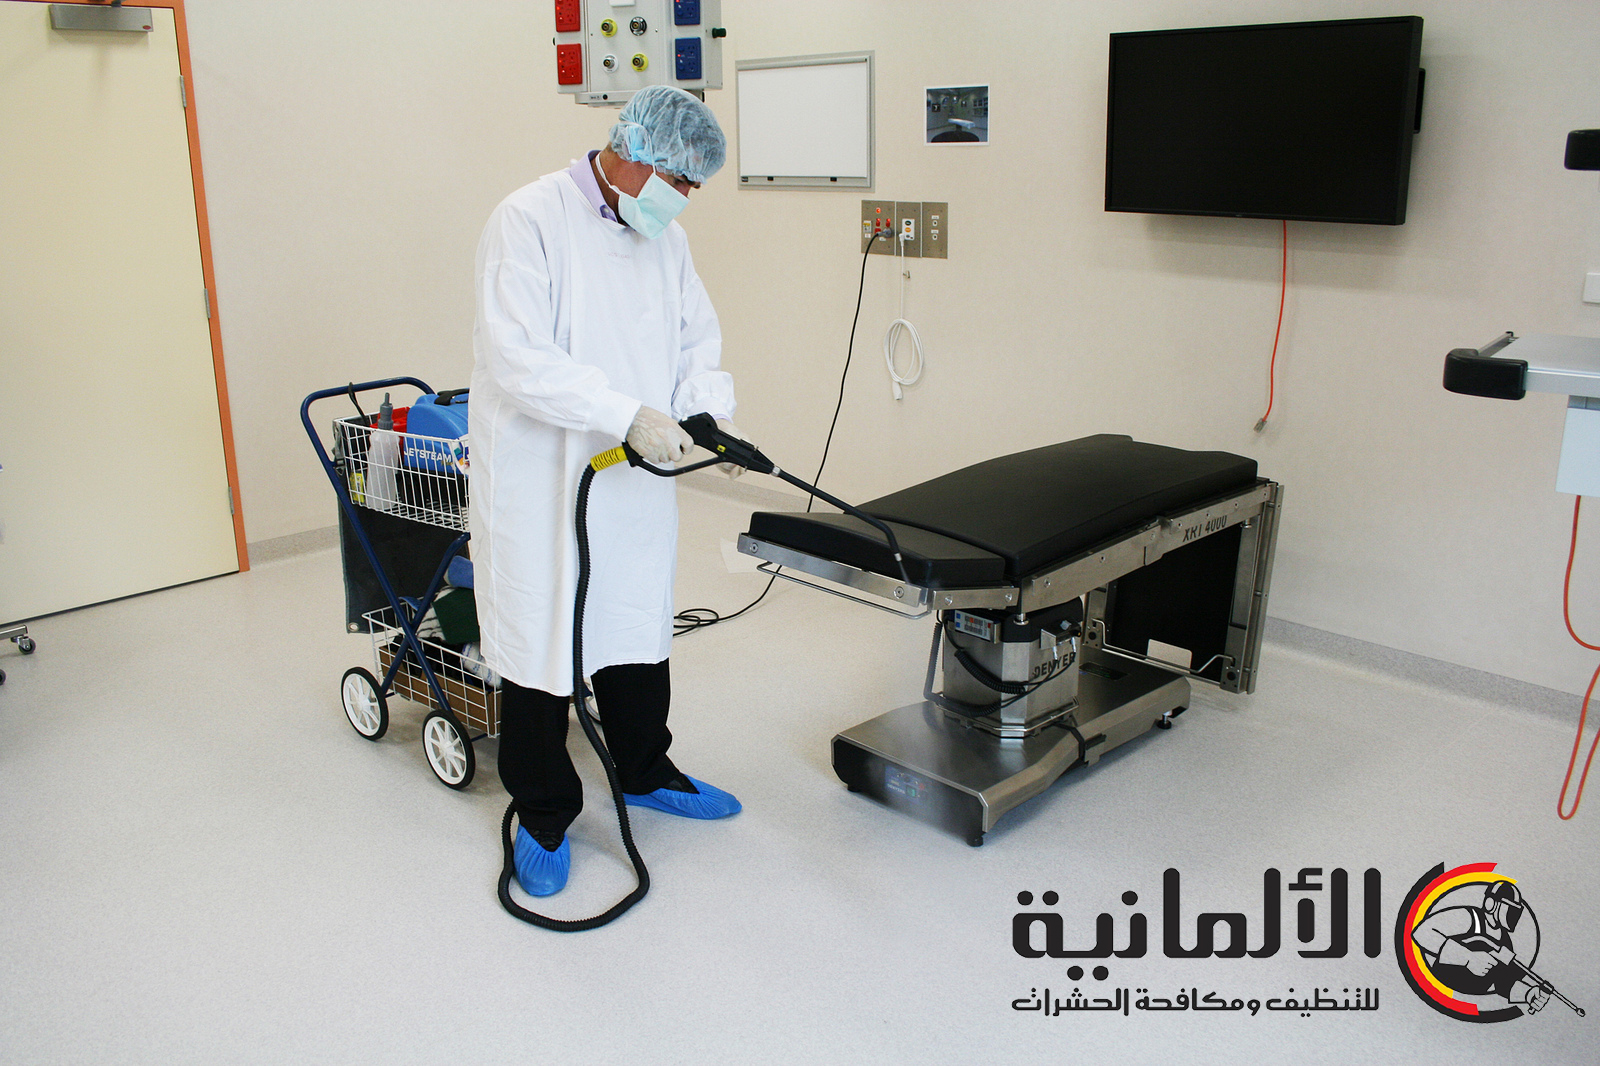 ما المنظفات والمواد التي نستخدمها في خدمات تنظيف المستشفيات؟